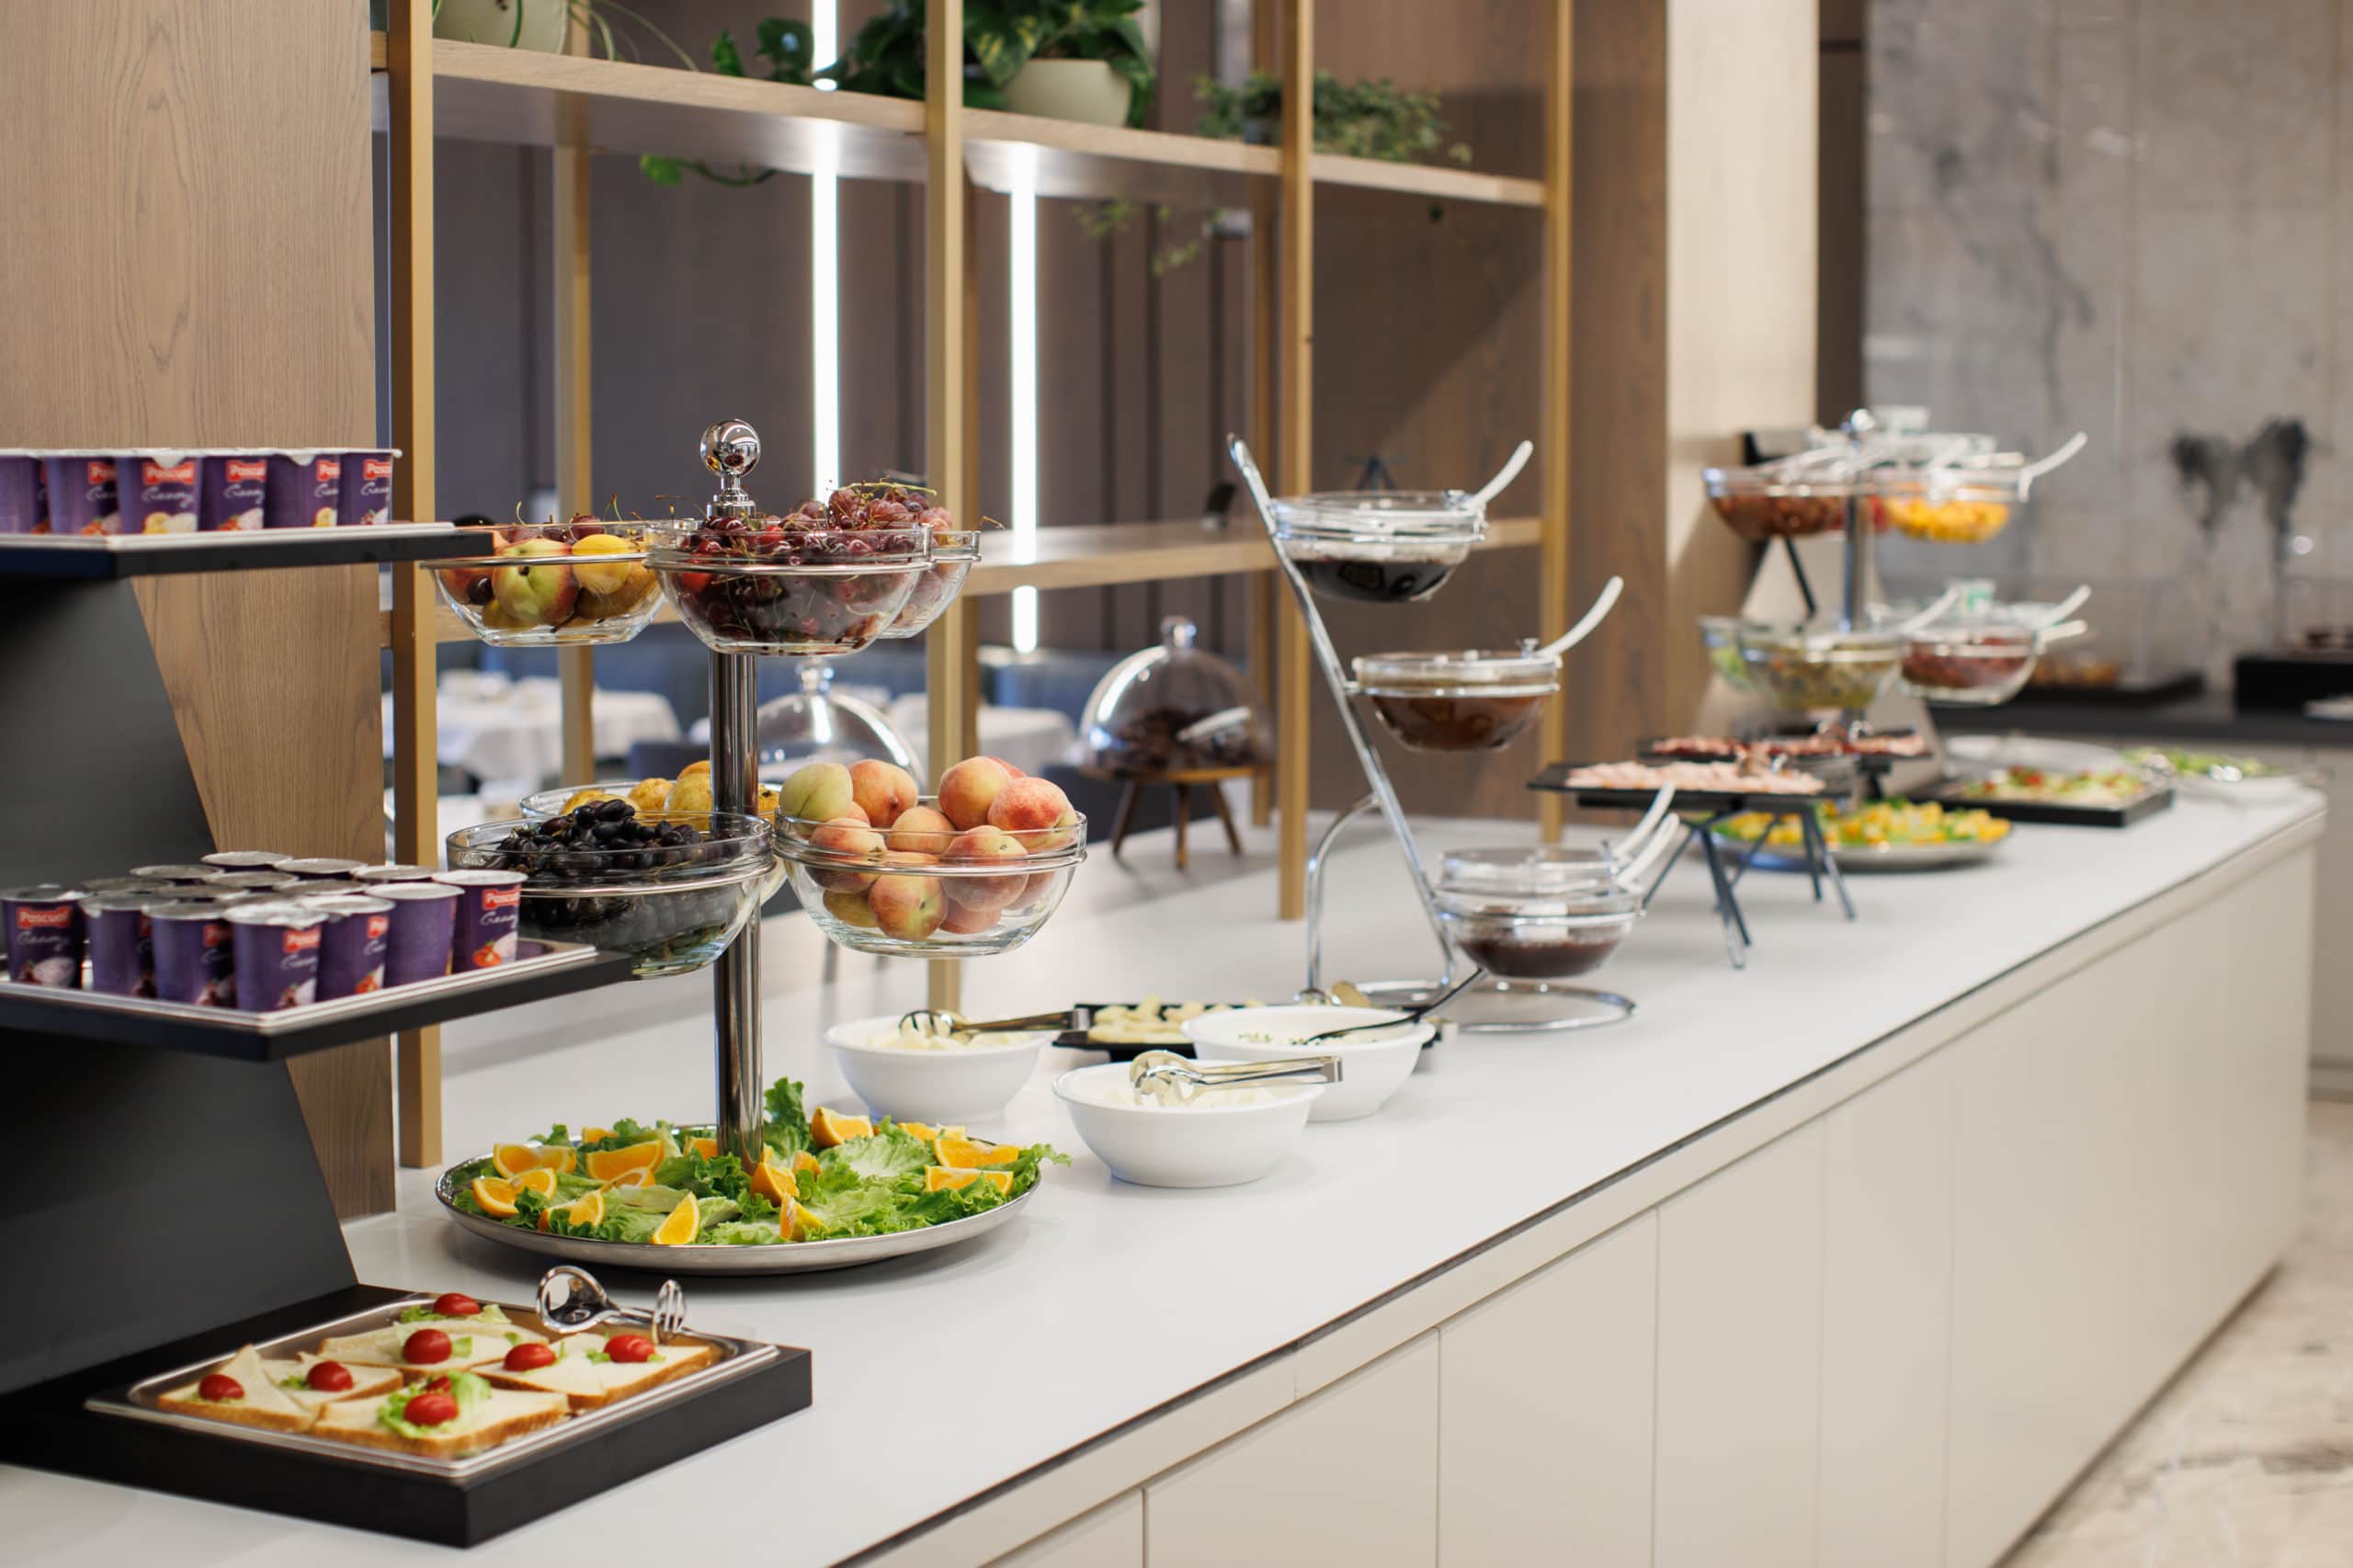 prado_luxury_hotel_breakfast_buffet_fruit_jam_bowls